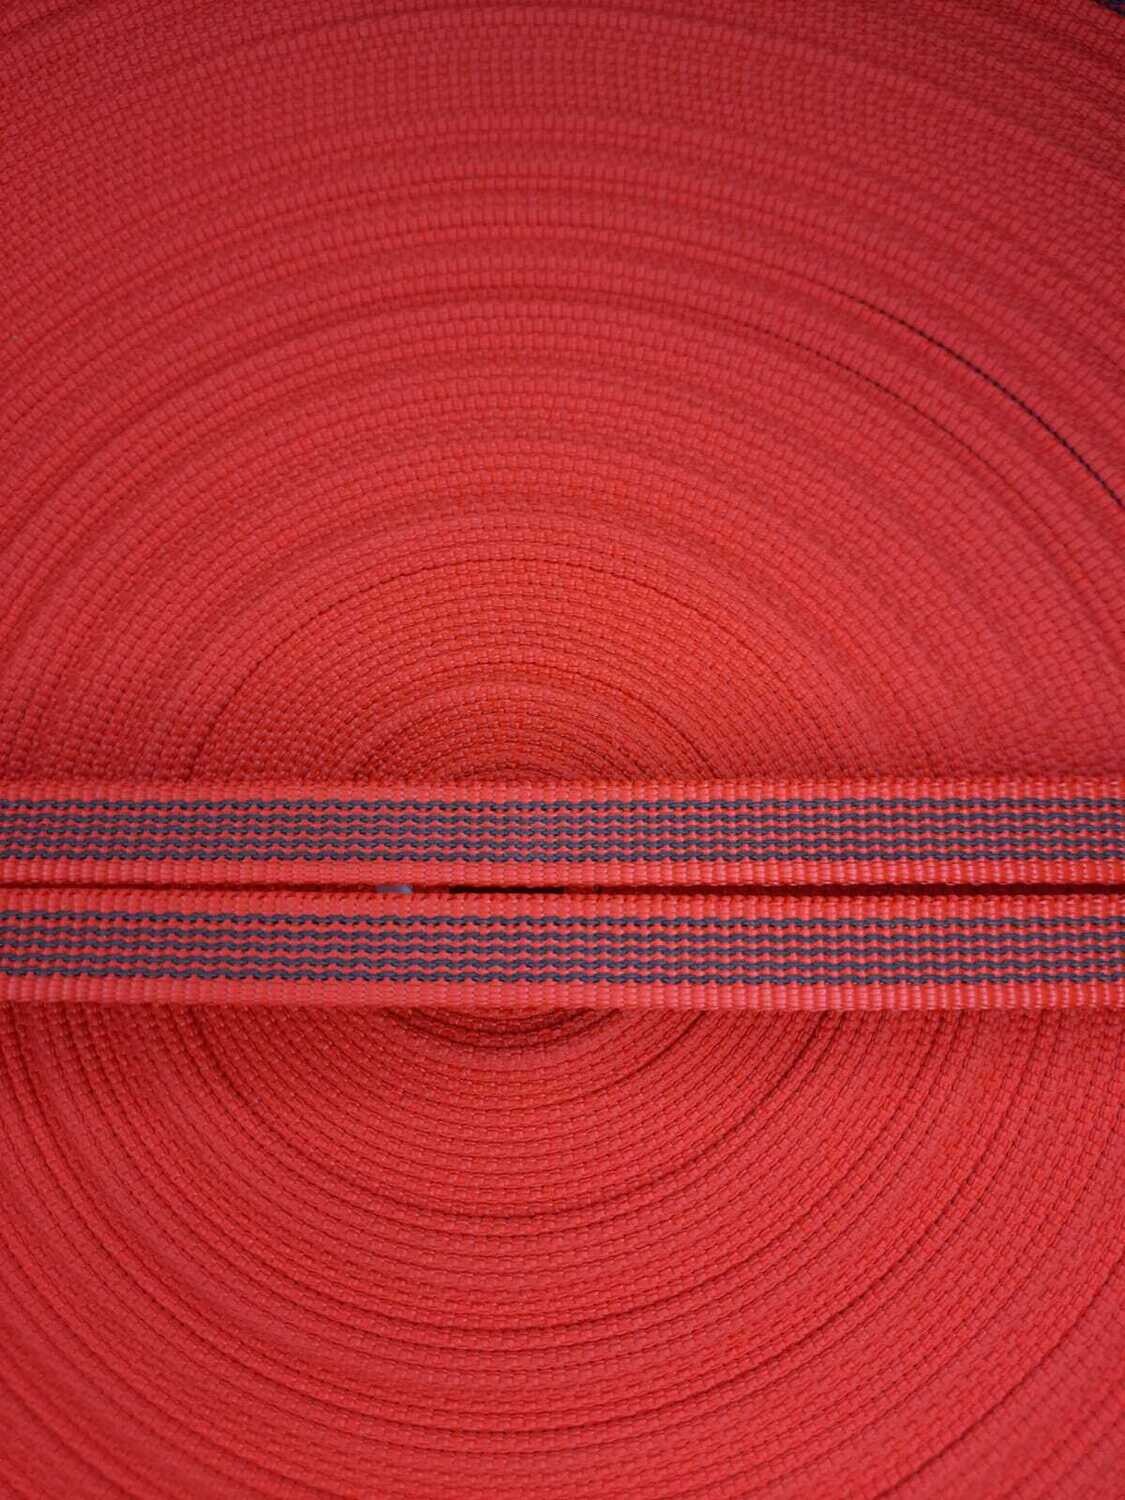 Лента ременная обр. 15.44 (DB-090 Красный)